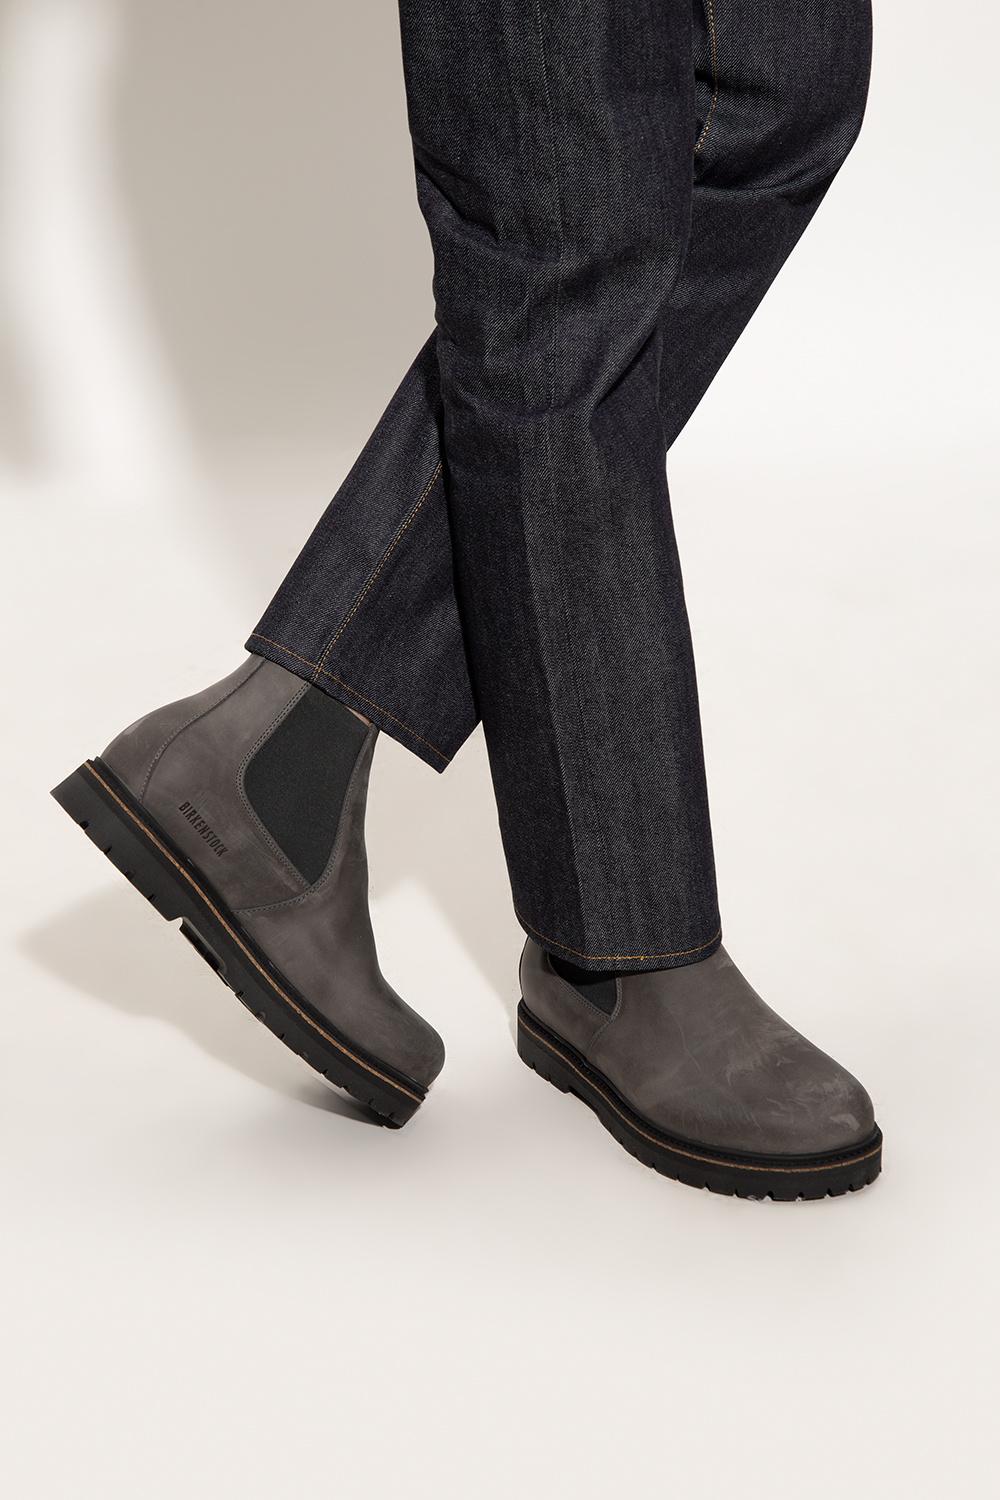 Birkenstock 'stalon Ii' Chelsea Boots in Gray for Men | Lyst